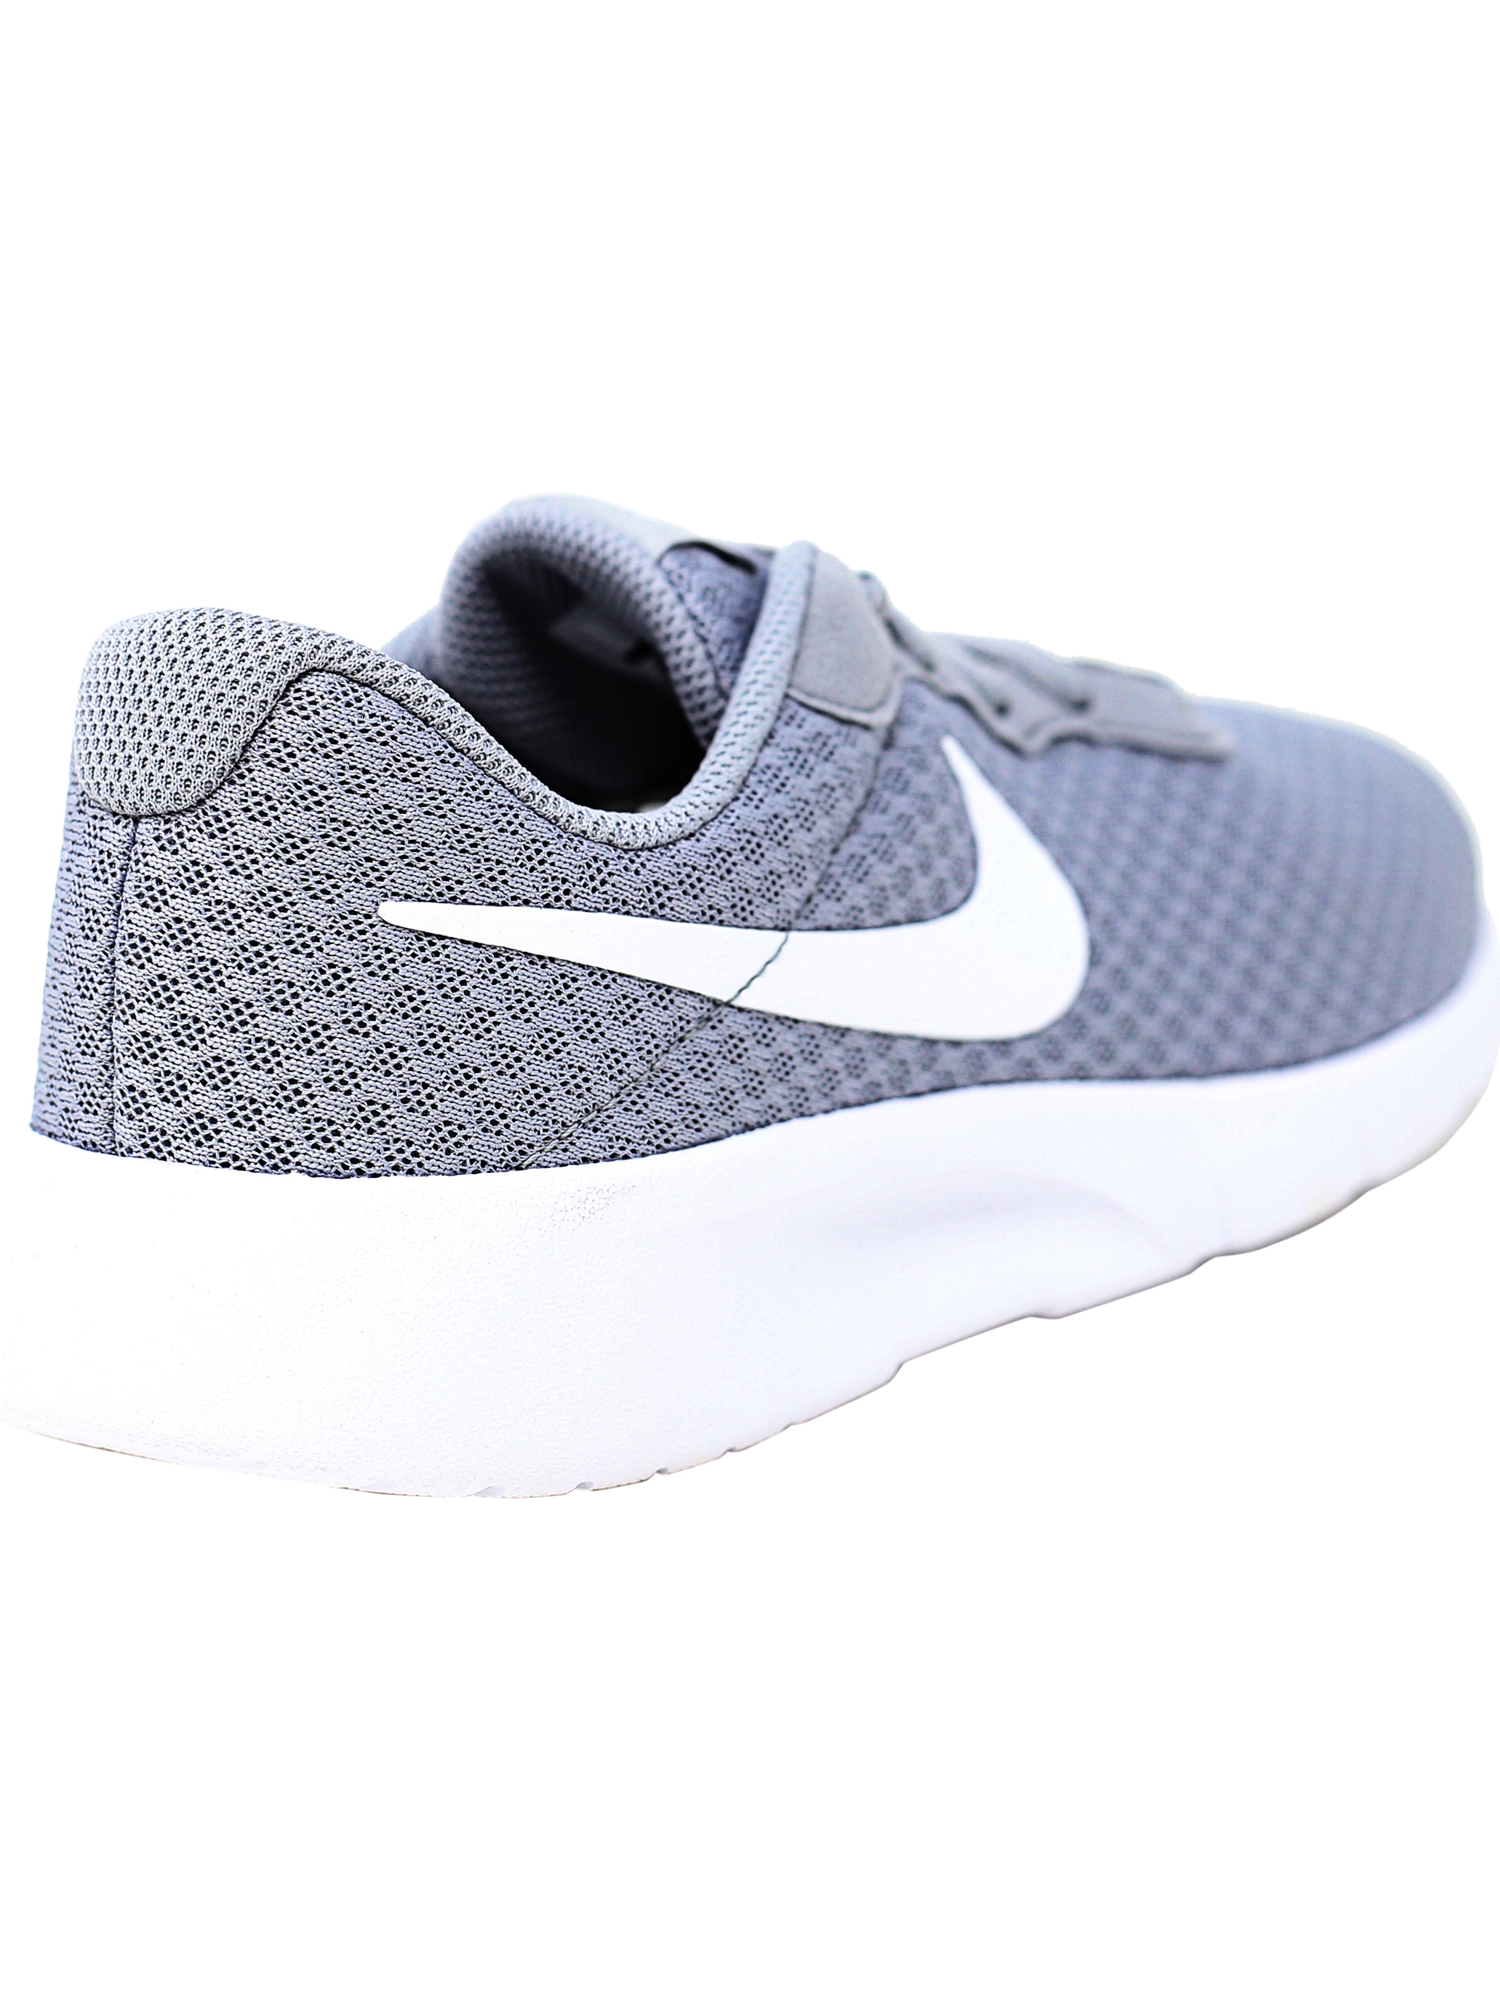 Nike Tanjun Wolf Grey / White - Ankle-High Mesh Running Shoe 7M - image 4 of 6